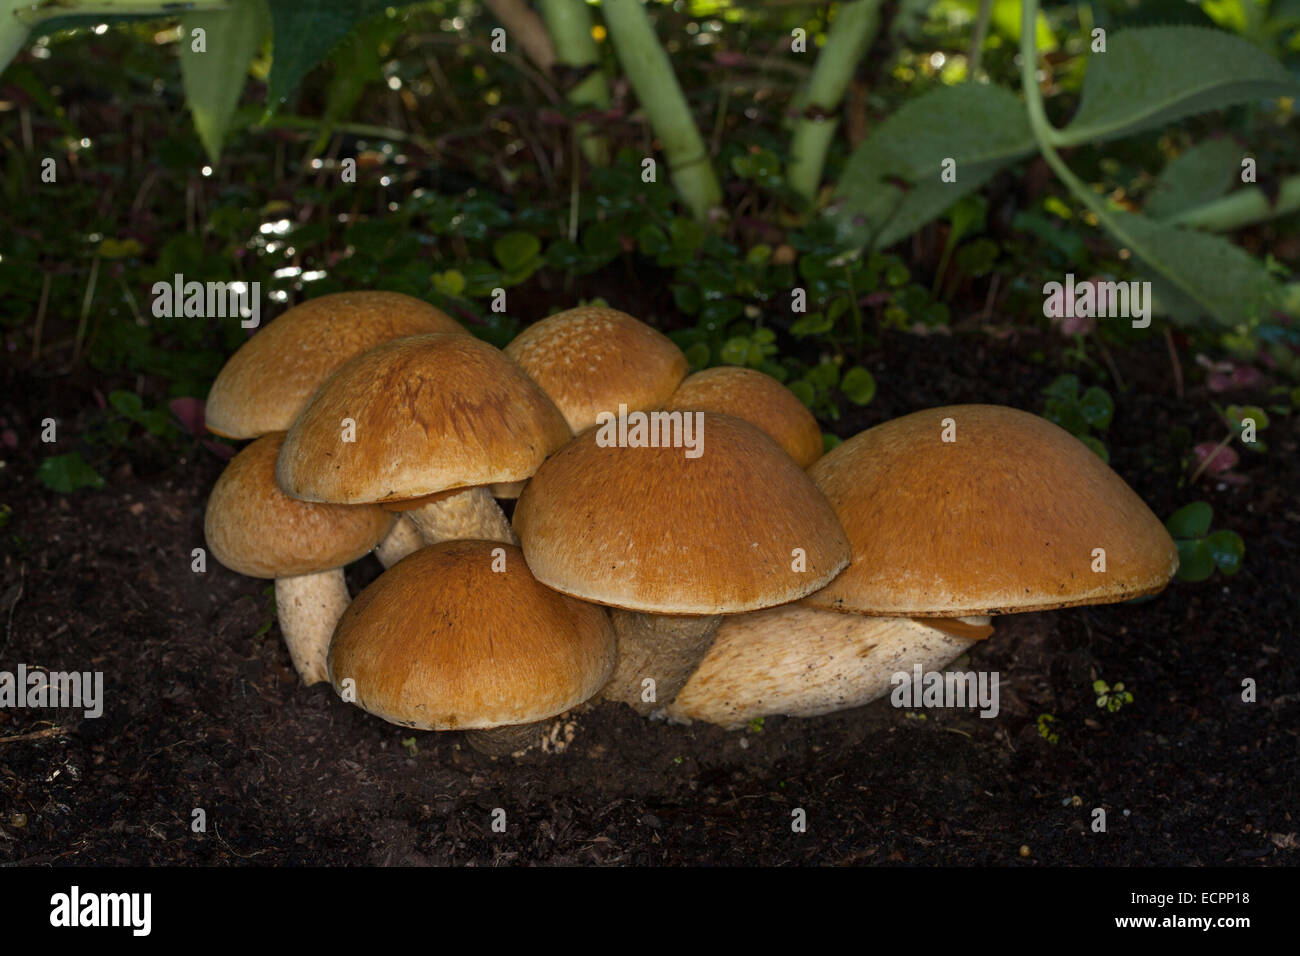 Wild mushrooms in a garden, Novato, Marin County, California, USA Stock Photo